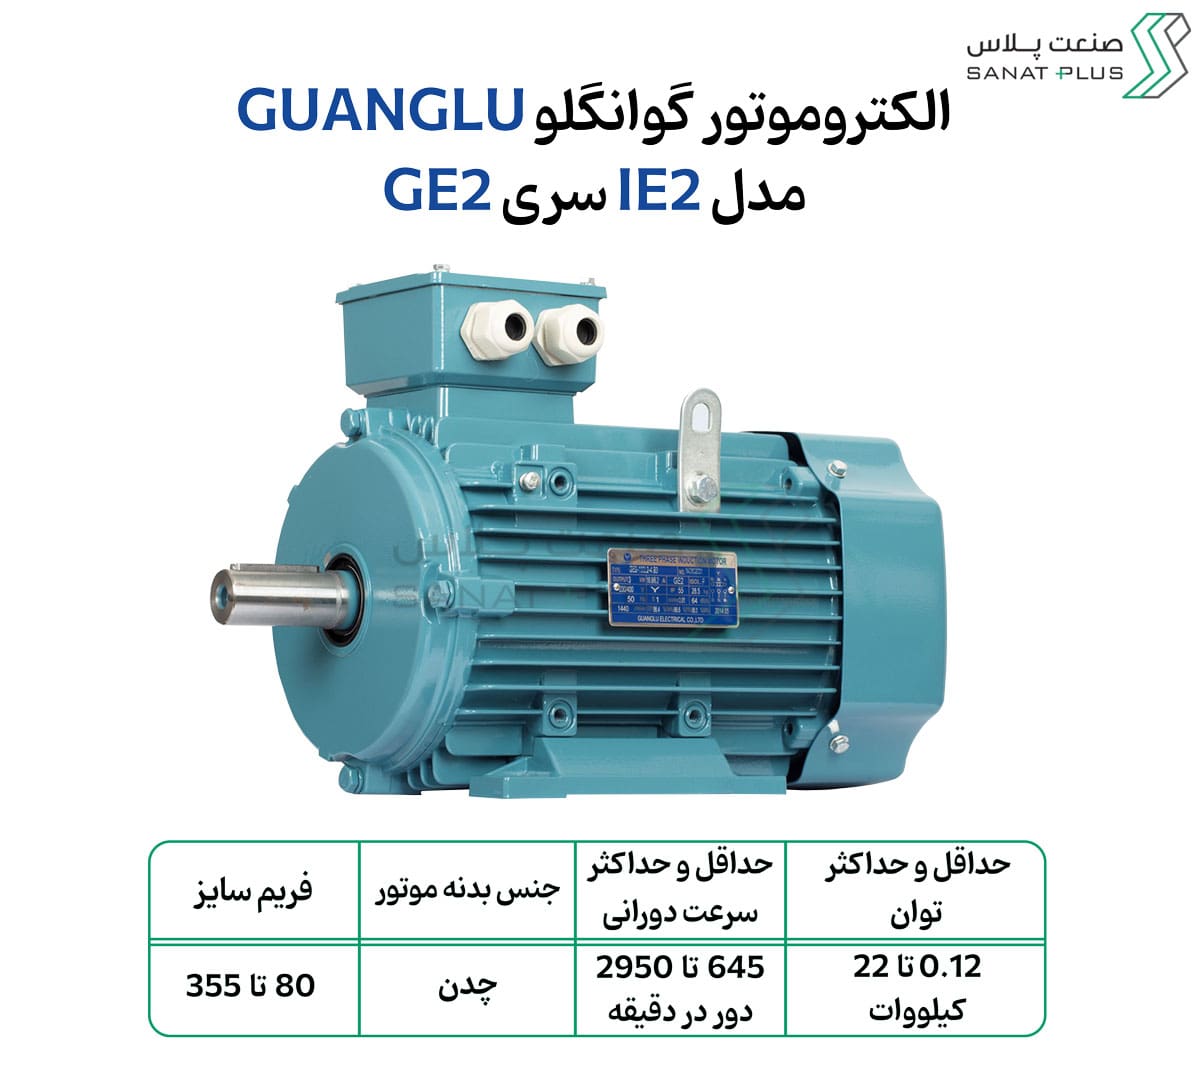 الکتروموتور پایه دار چینی مدل GE2